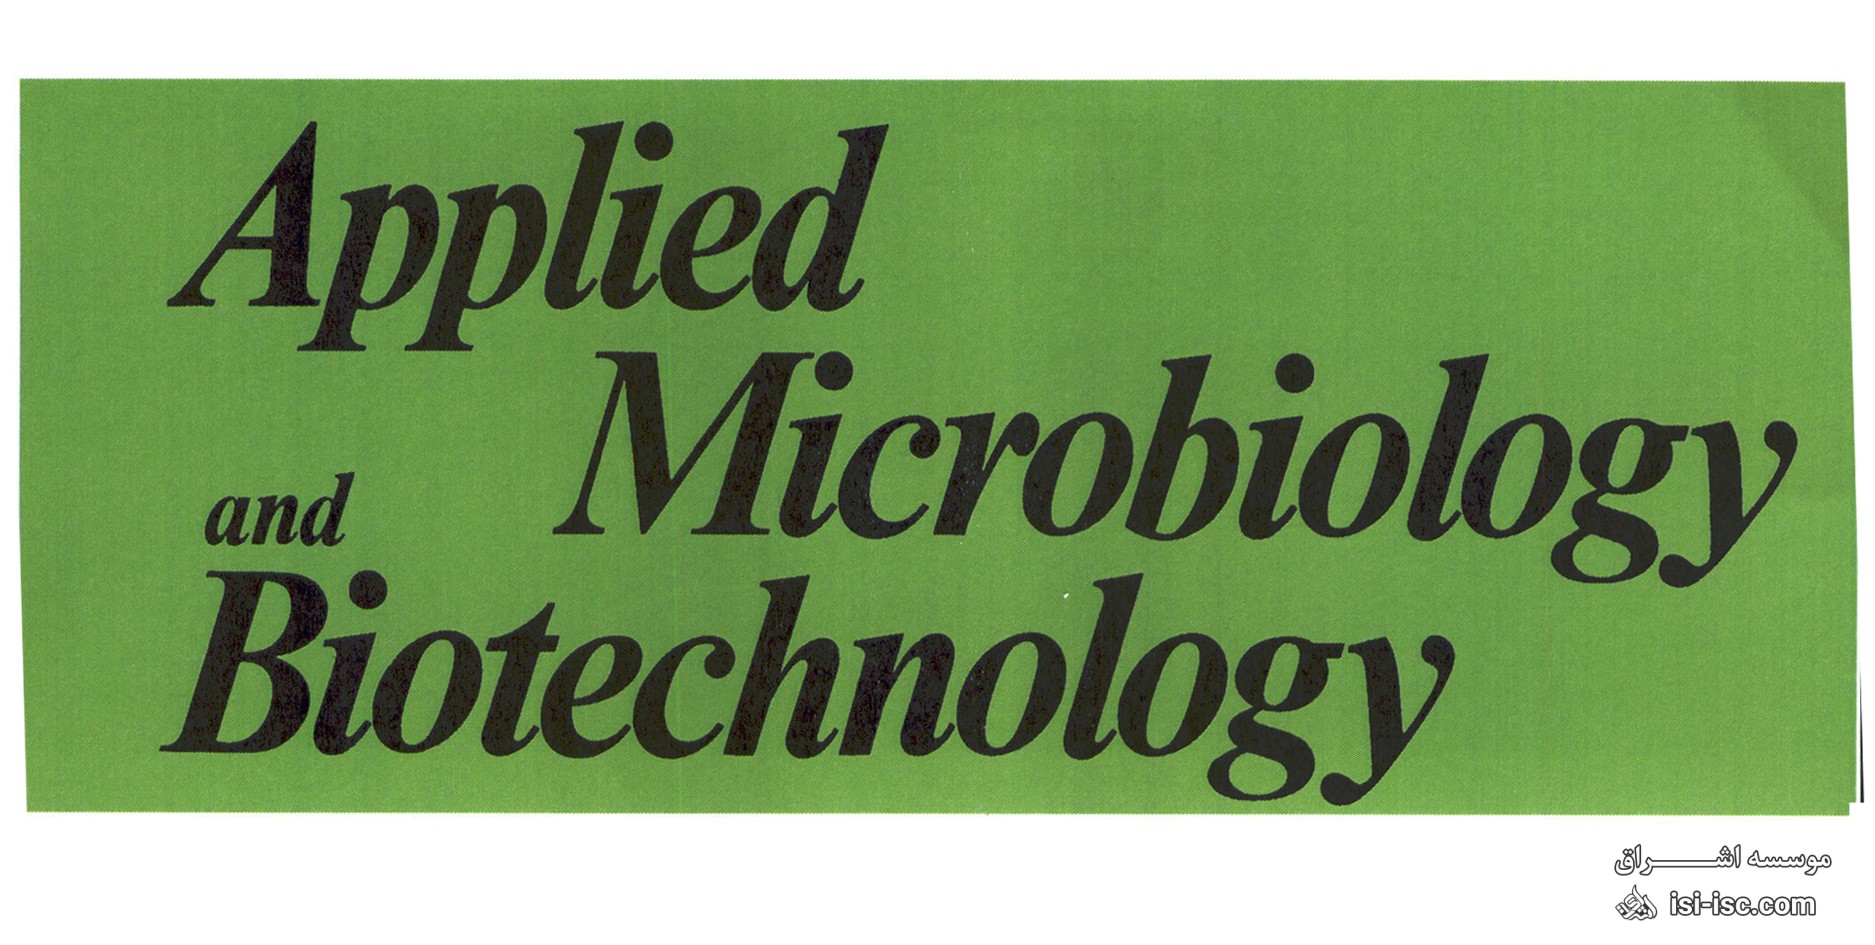 لیست نشریات معتبر آی اس ای (ISI)  بیوتکنولوژی و میکروبیولوژی کاربردی